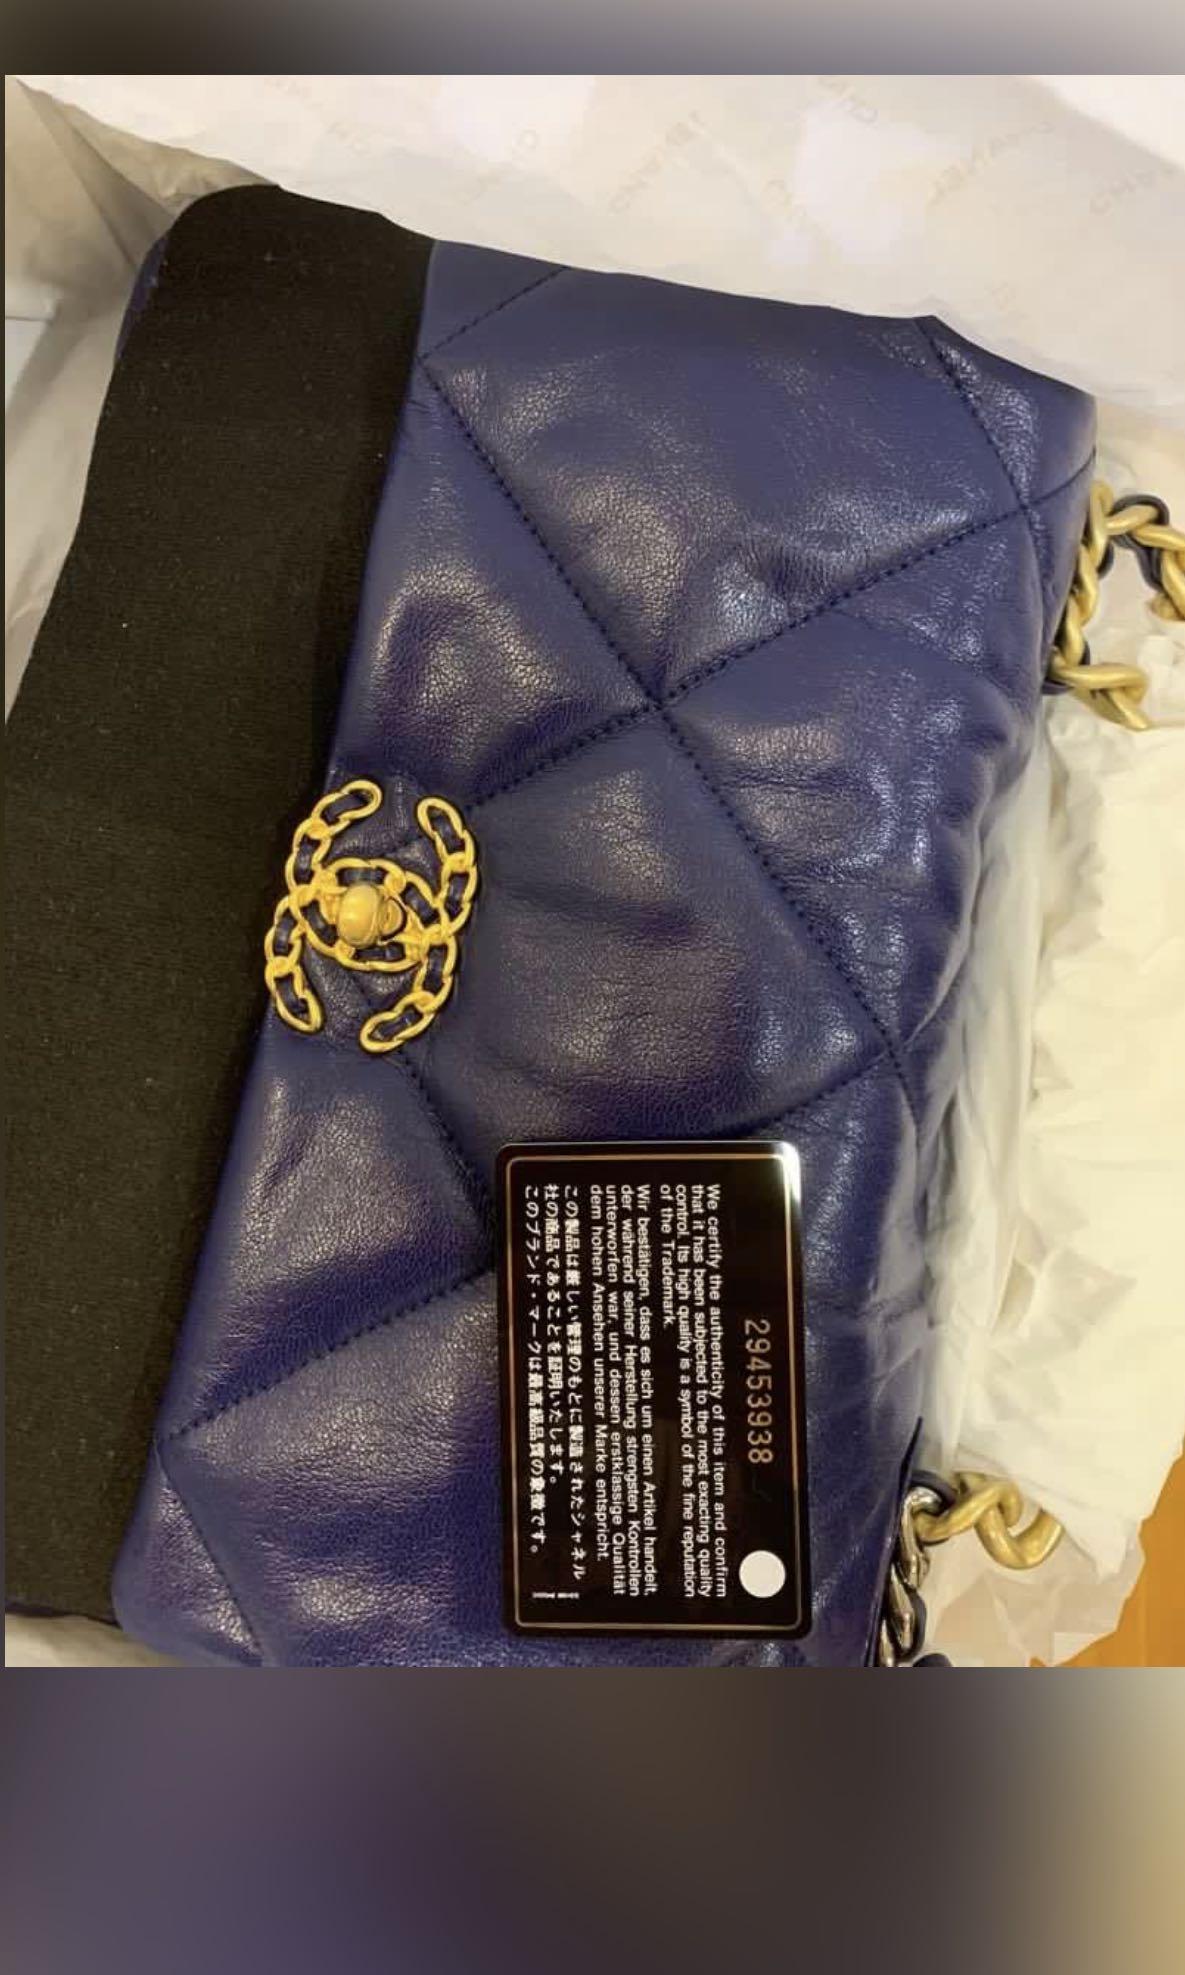 Chanel 19 Large Flap Bag C1161-blue